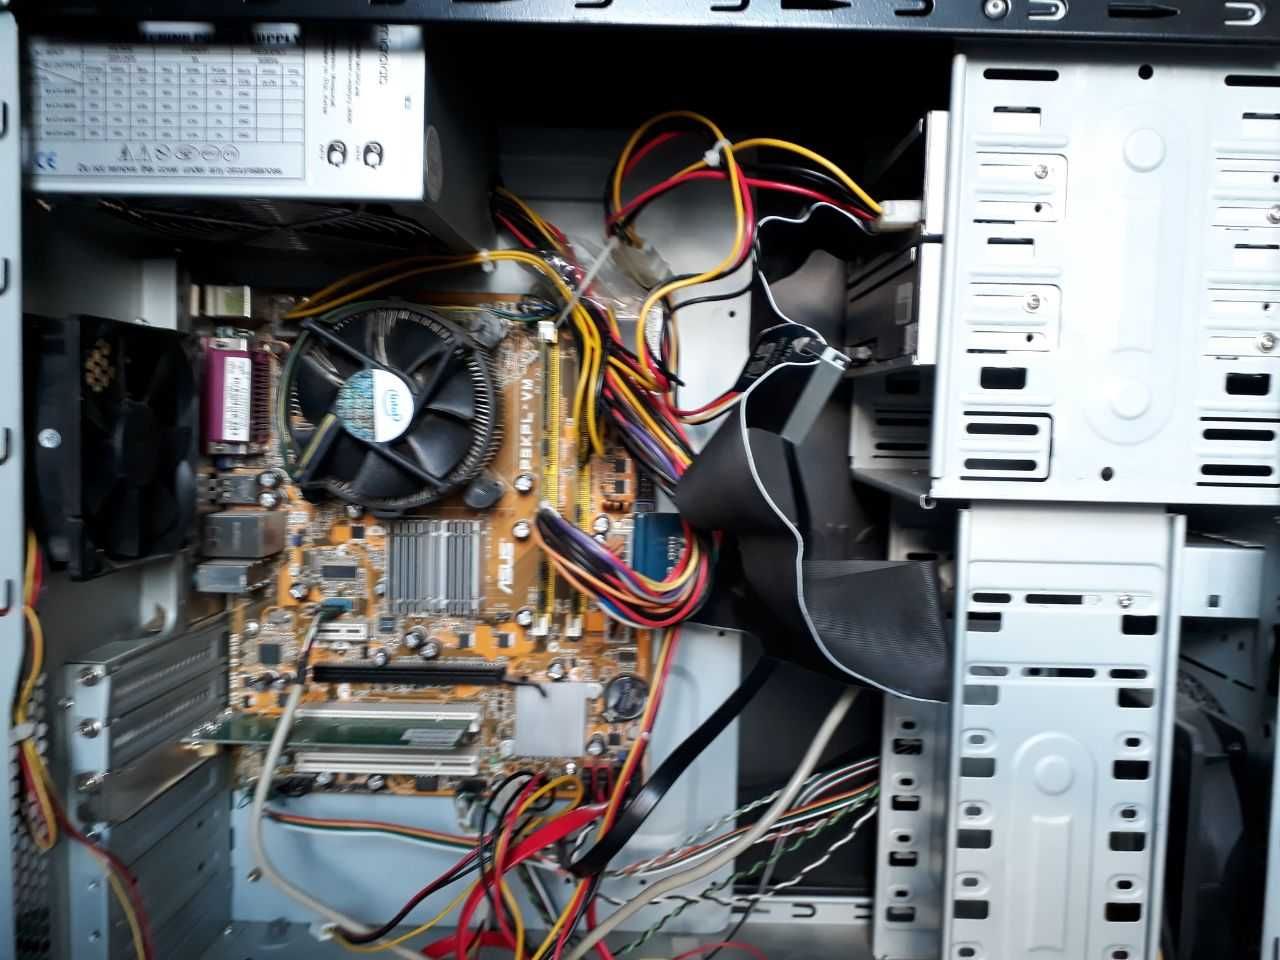 Продаю ПК — компьютер для дома/офиса (Intel) с 17-дюймовым монитором